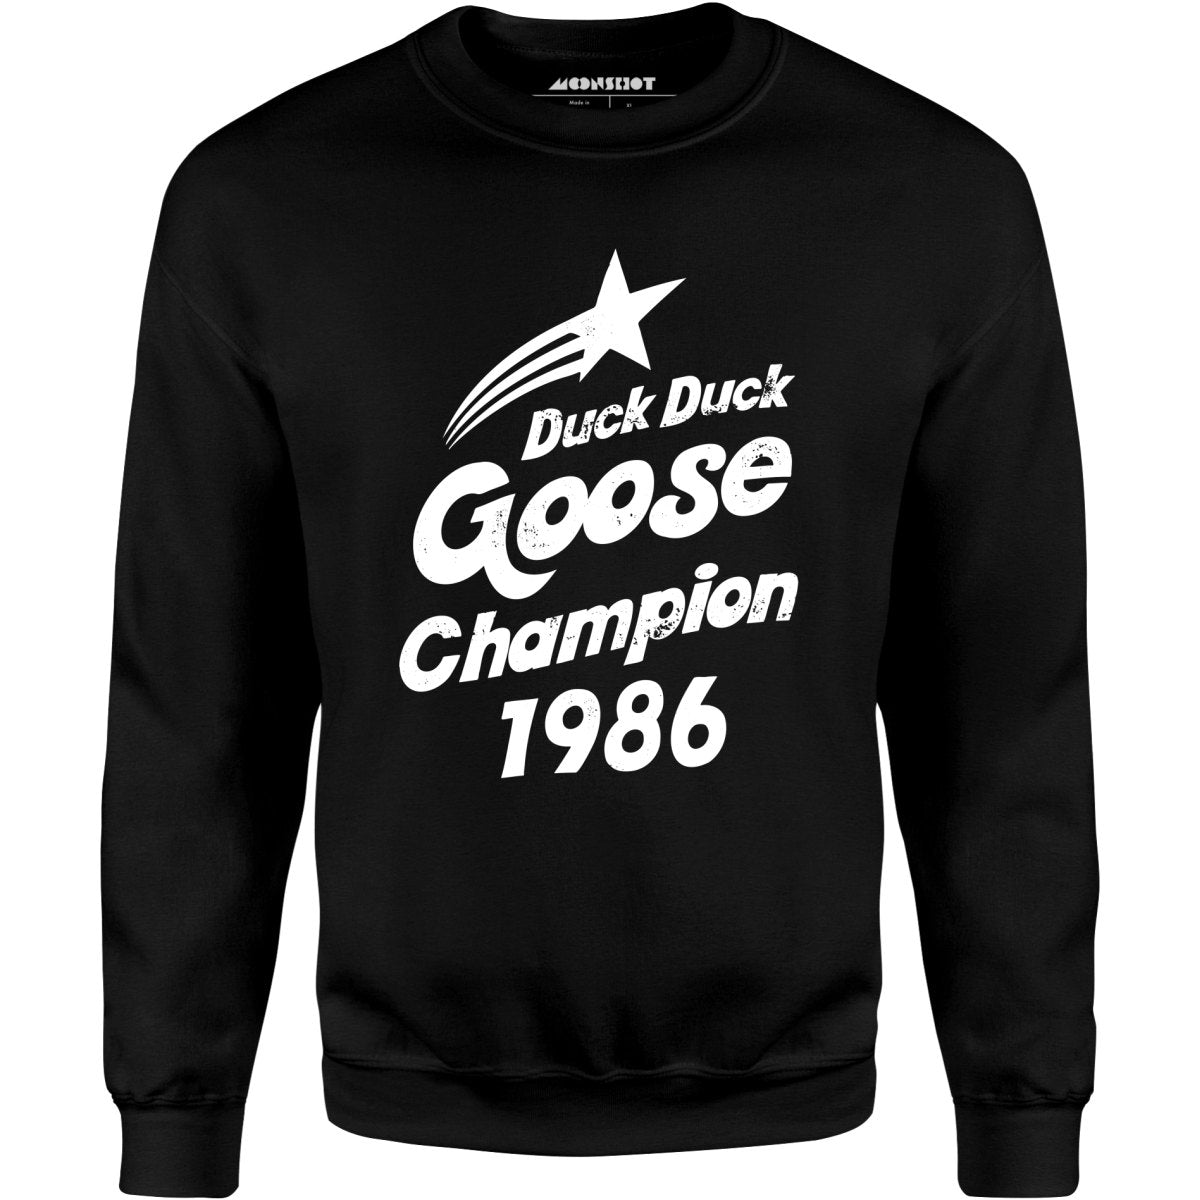 Duck Duck Goose Champion 1986 - Unisex Sweatshirt